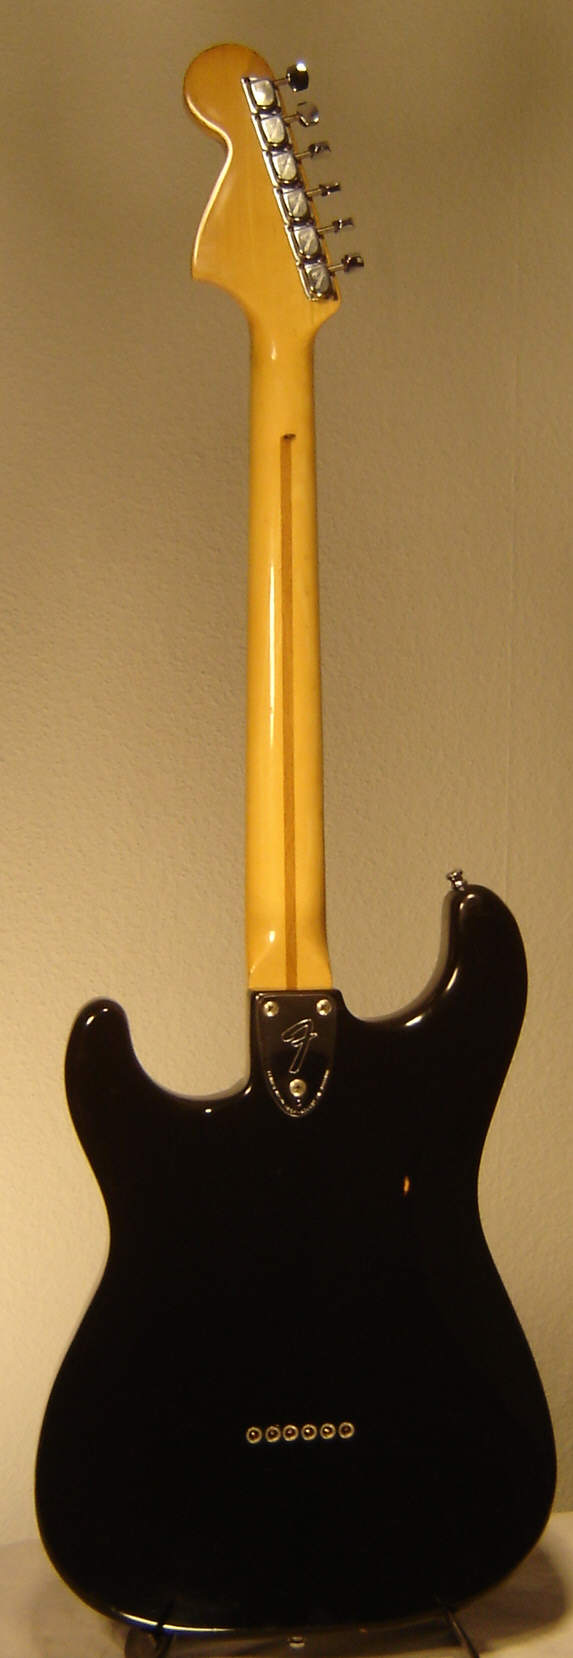 Fender_Stratocaster_1980_black_nontrem-b.jpg